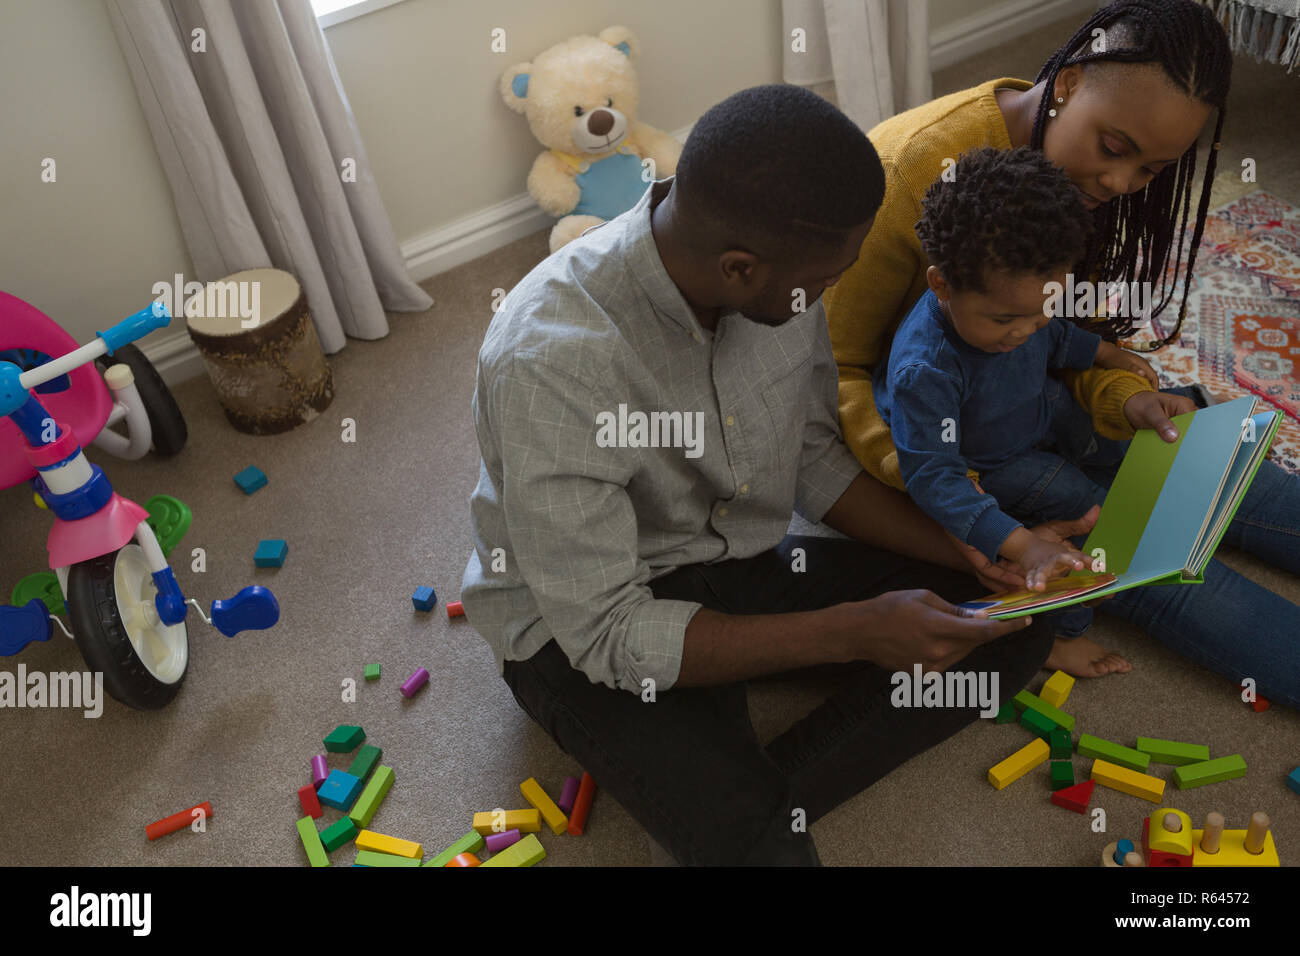 Padres leyendo un libro de imágenes con su hijo en un salón Foto de stock